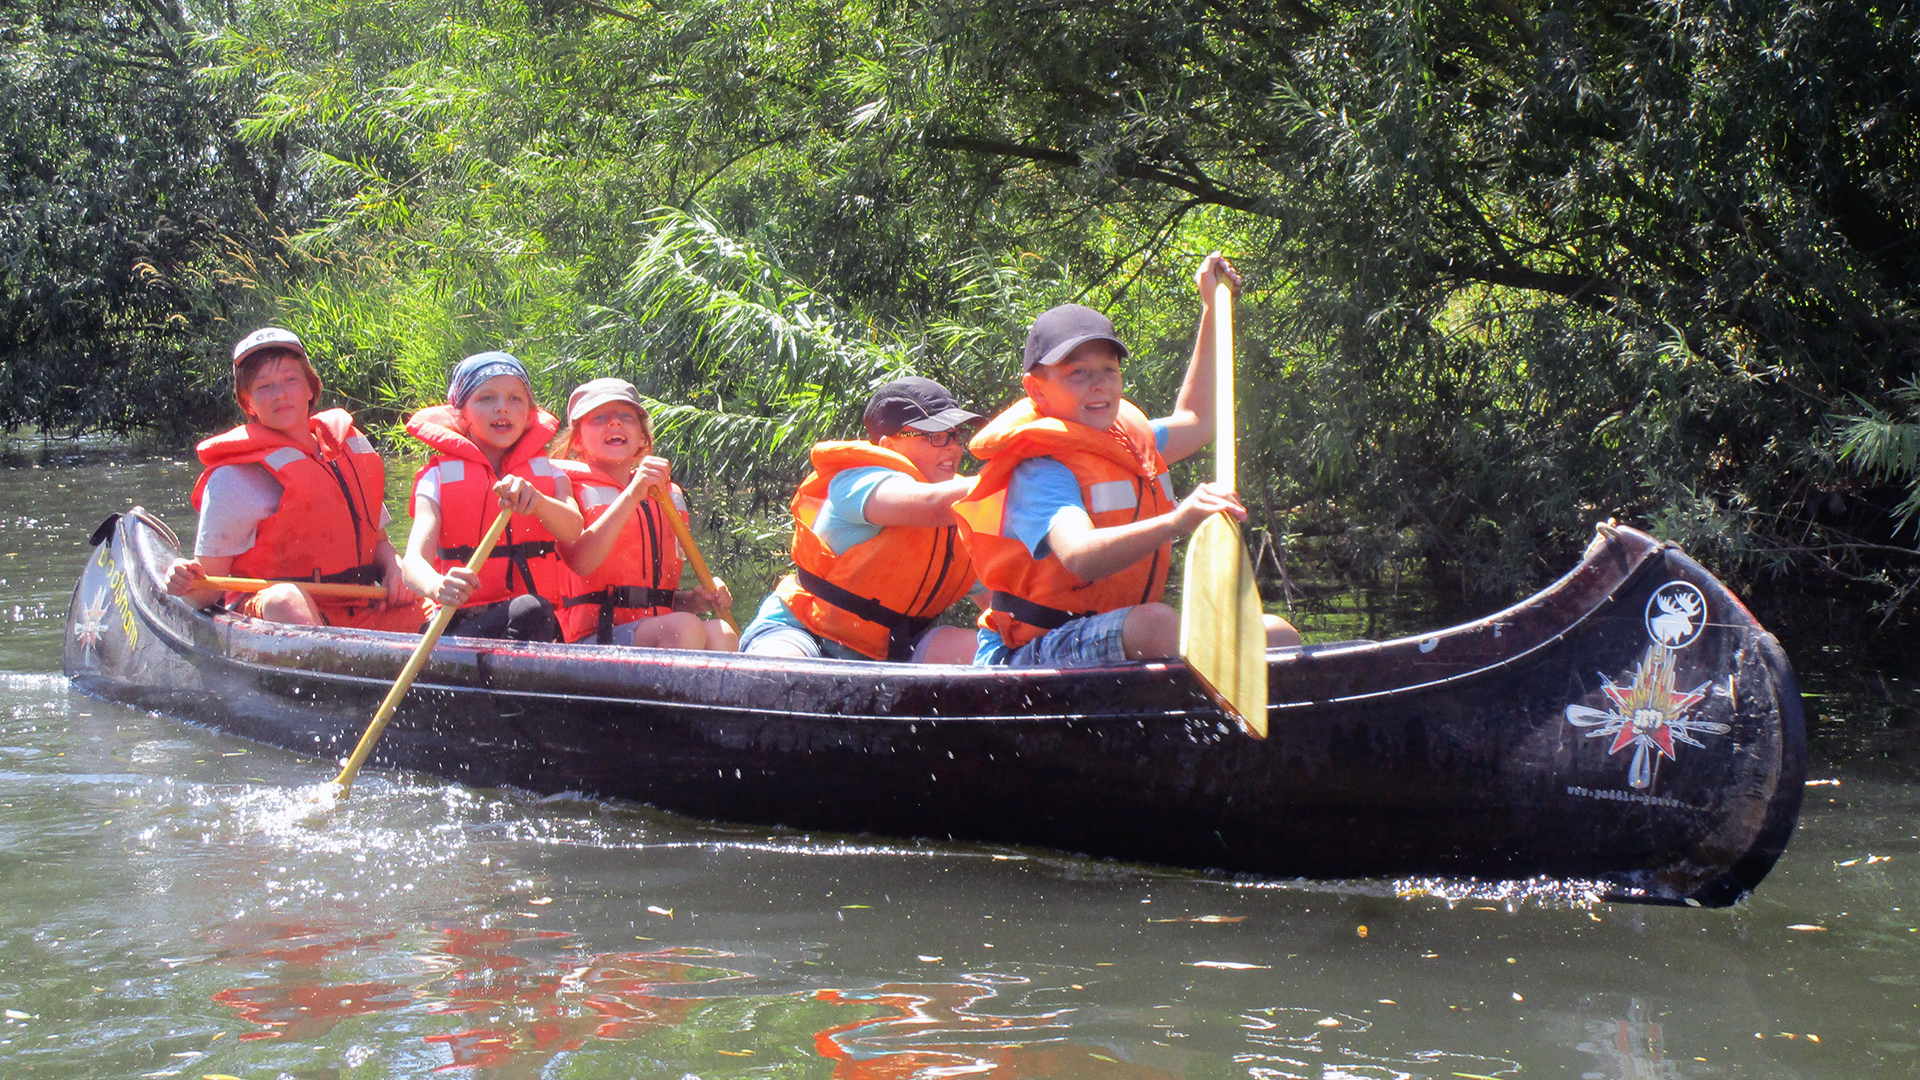 Kinder paddeln in einem Kanu auf einem Fluss.